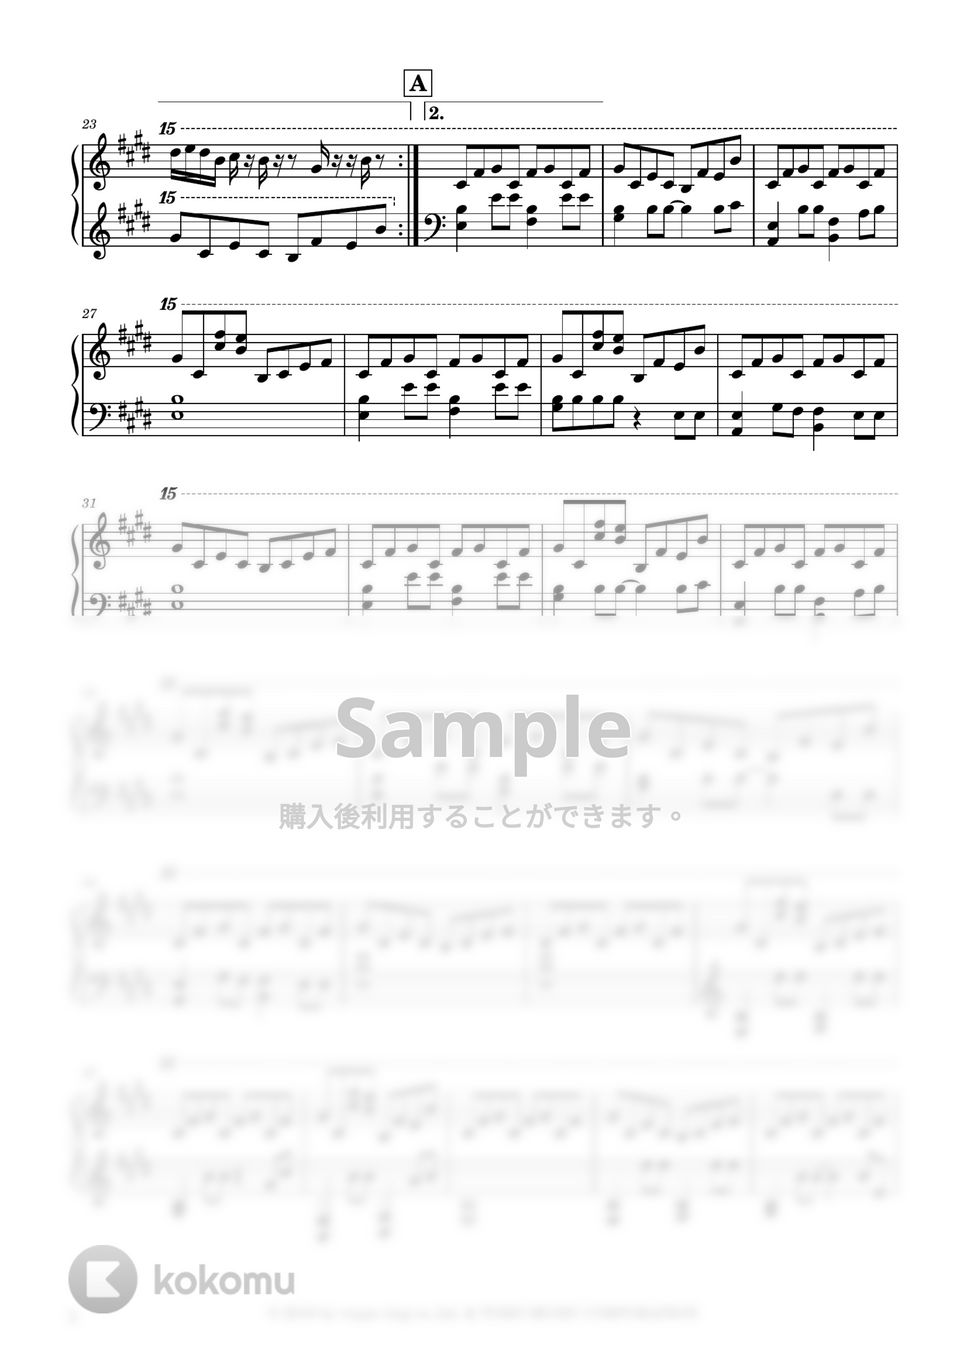 野田洋次郎 - グランドエスケープ (無料楽譜, 上級) by Ray